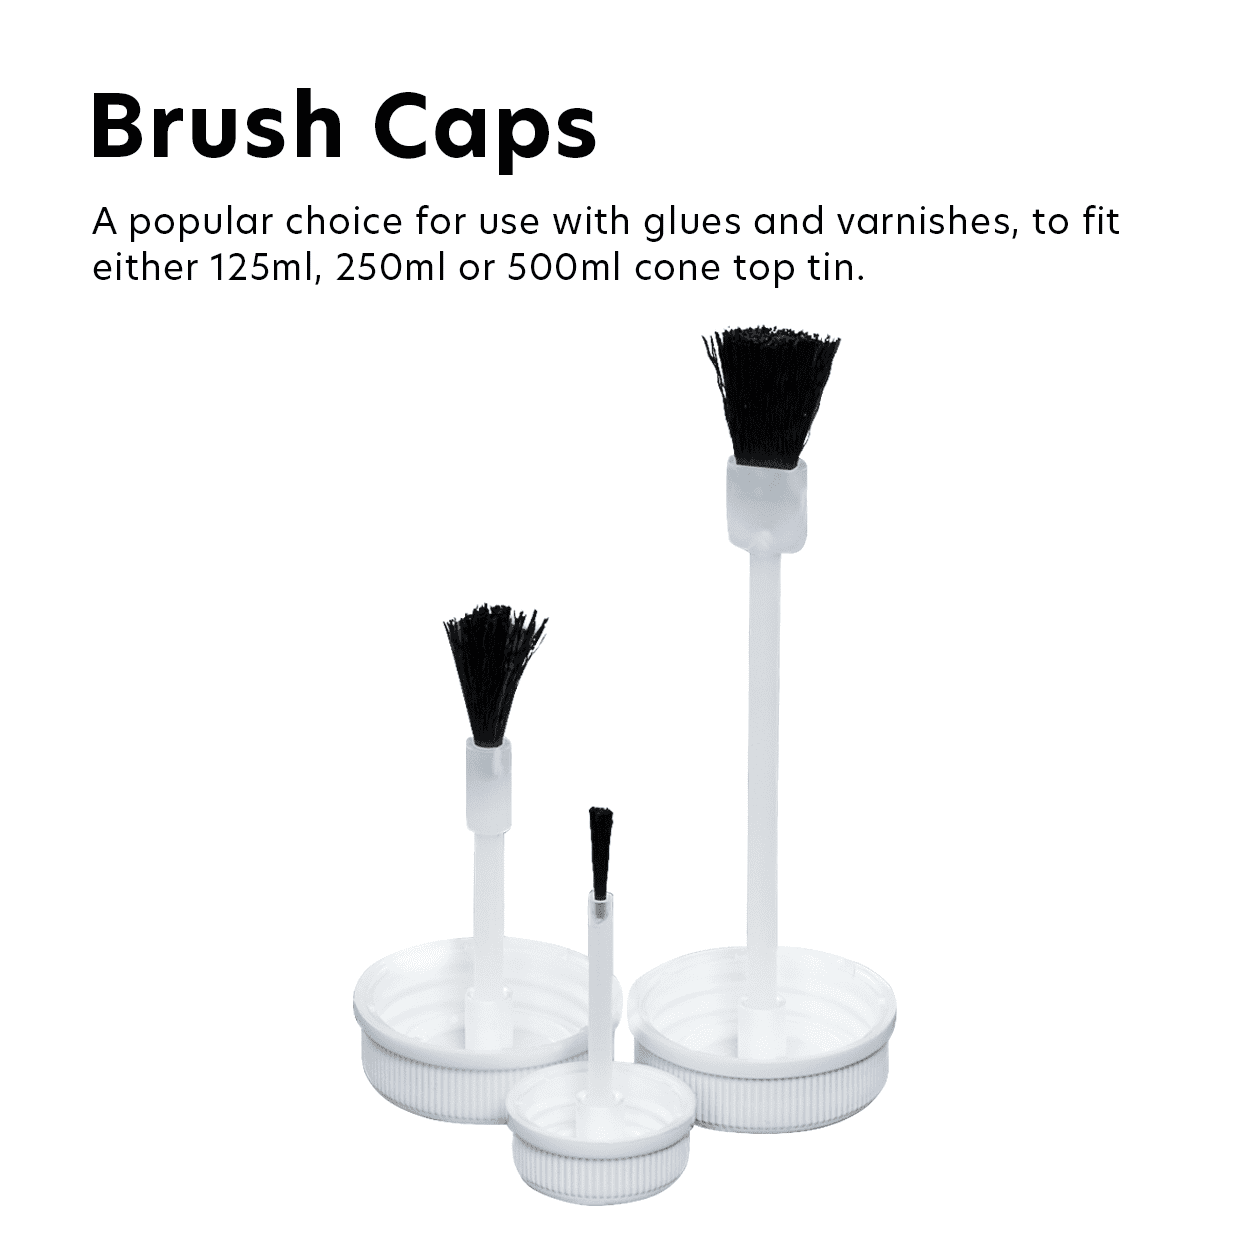 Brush Caps